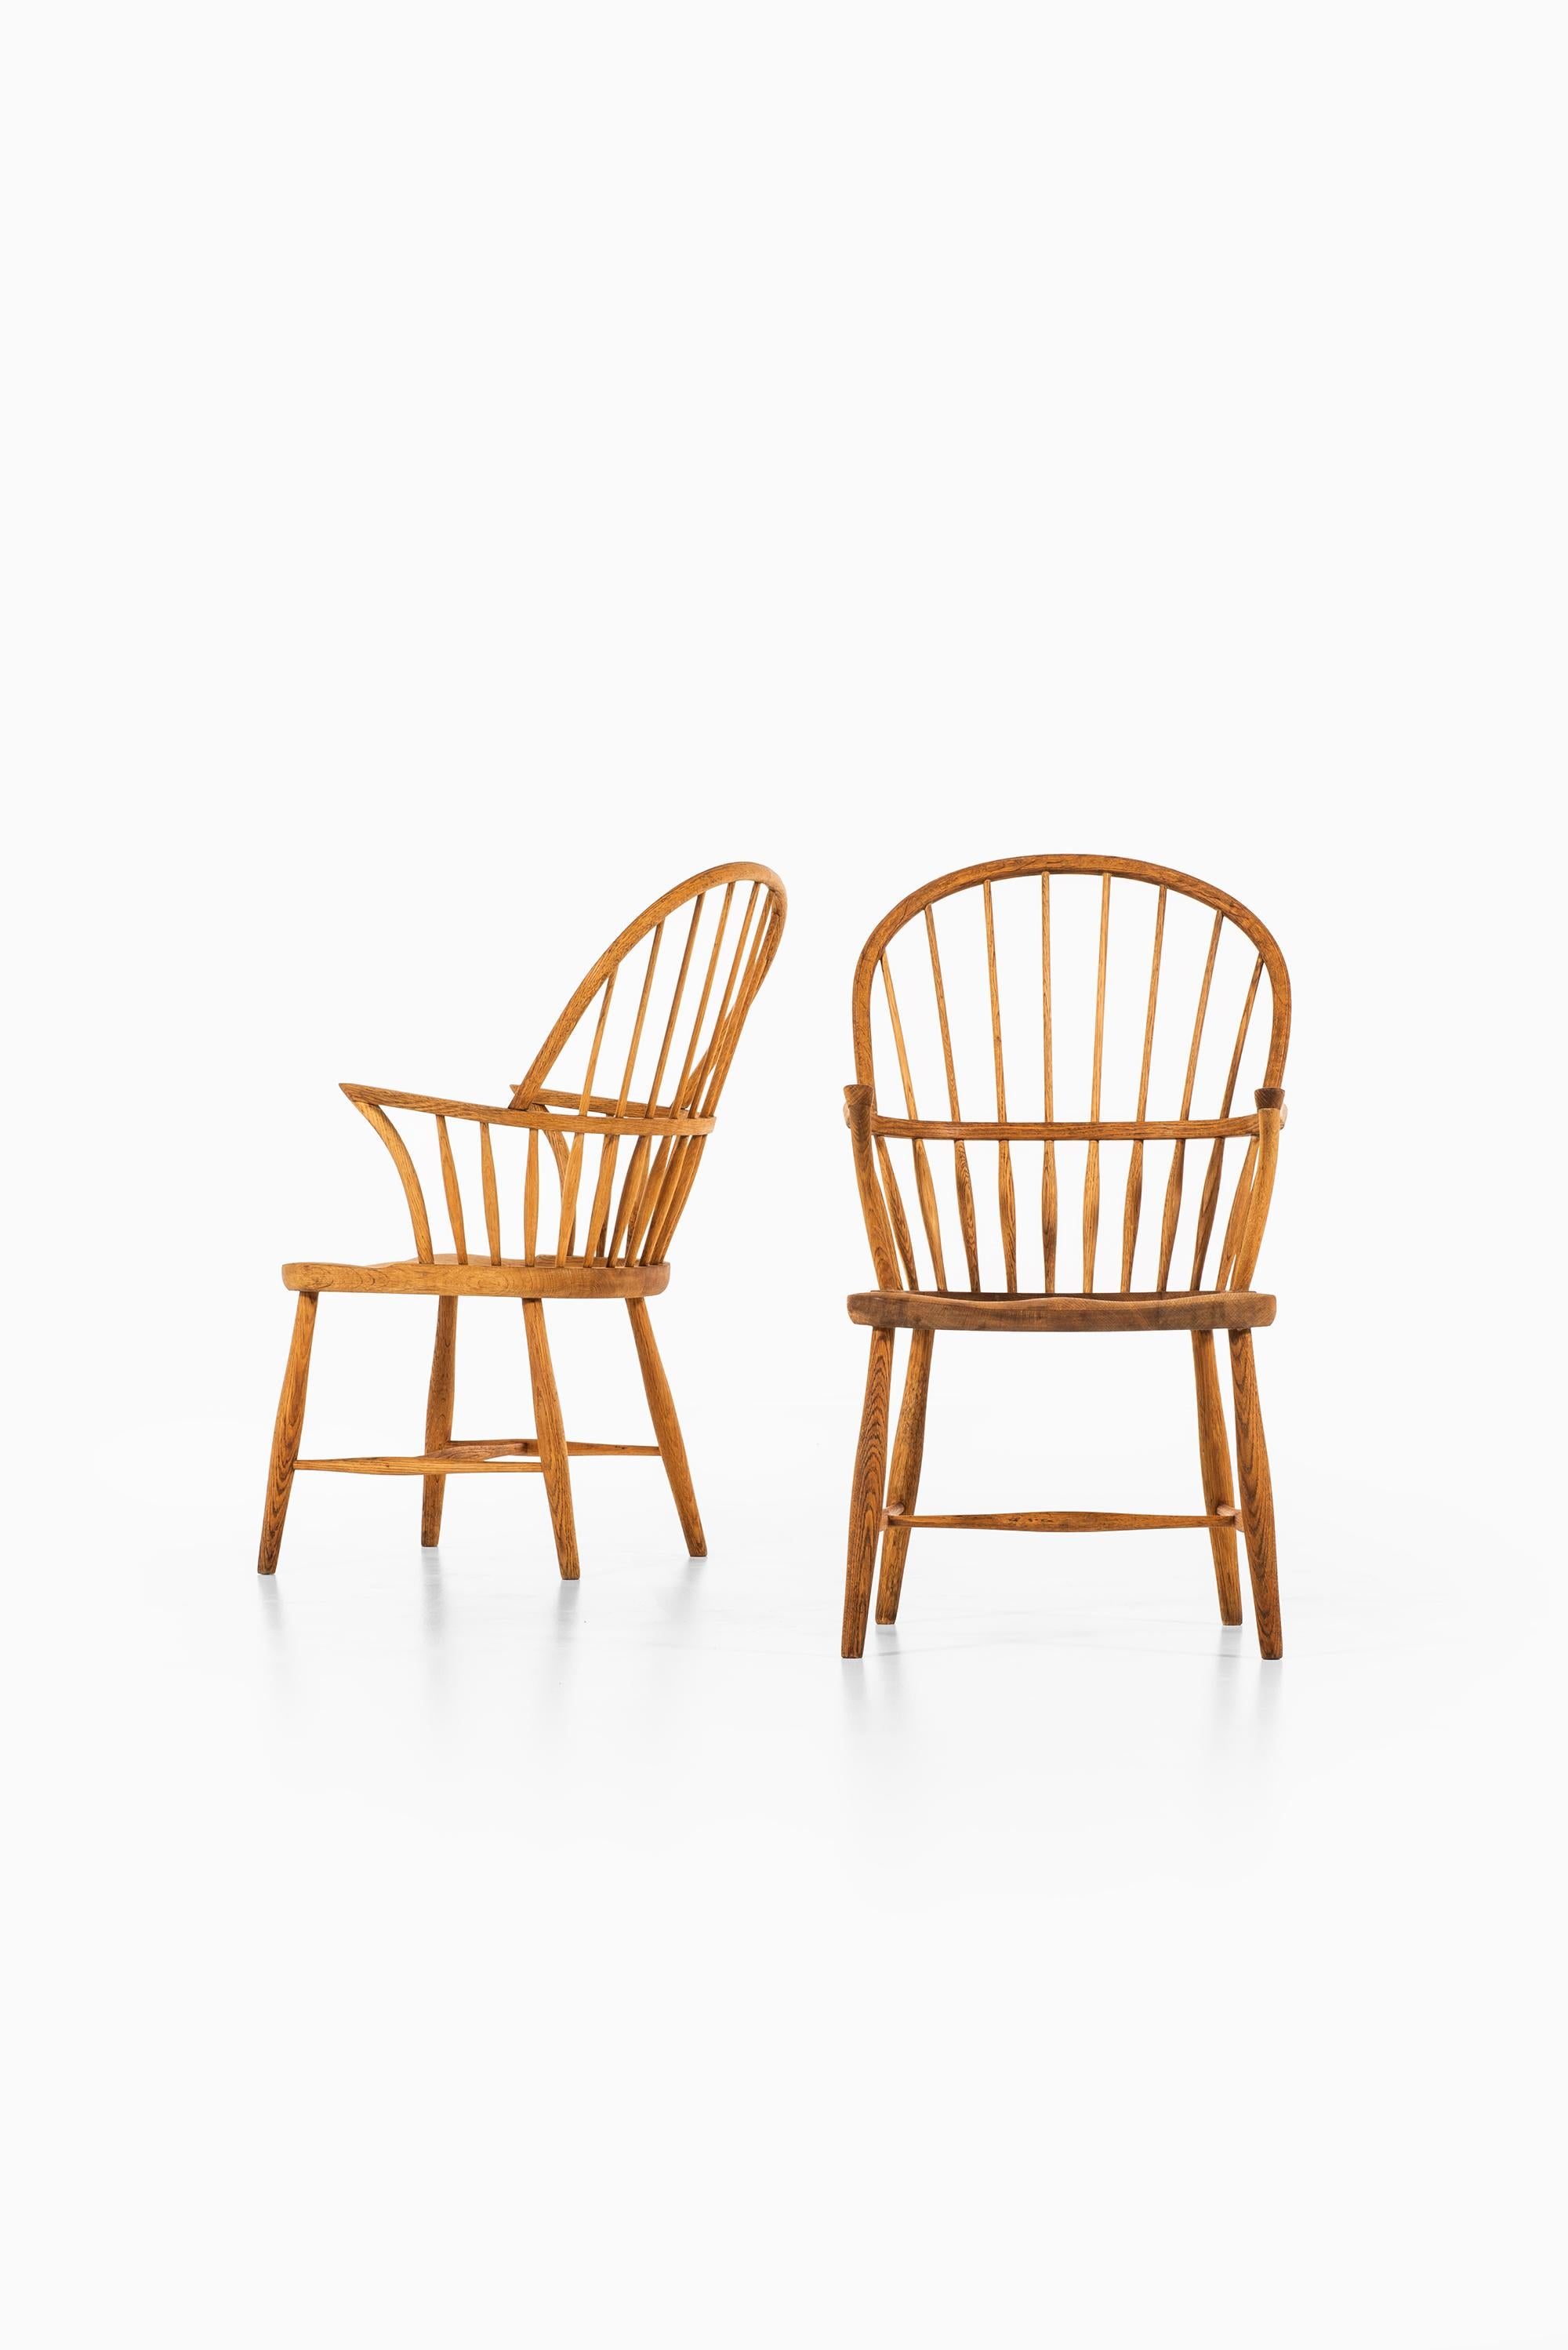 Rares chaises de salle à manger Windsor modèle CH 18A conçues par Frits Henningsen. Produit par Carl Hansen & Søn au Danemark.